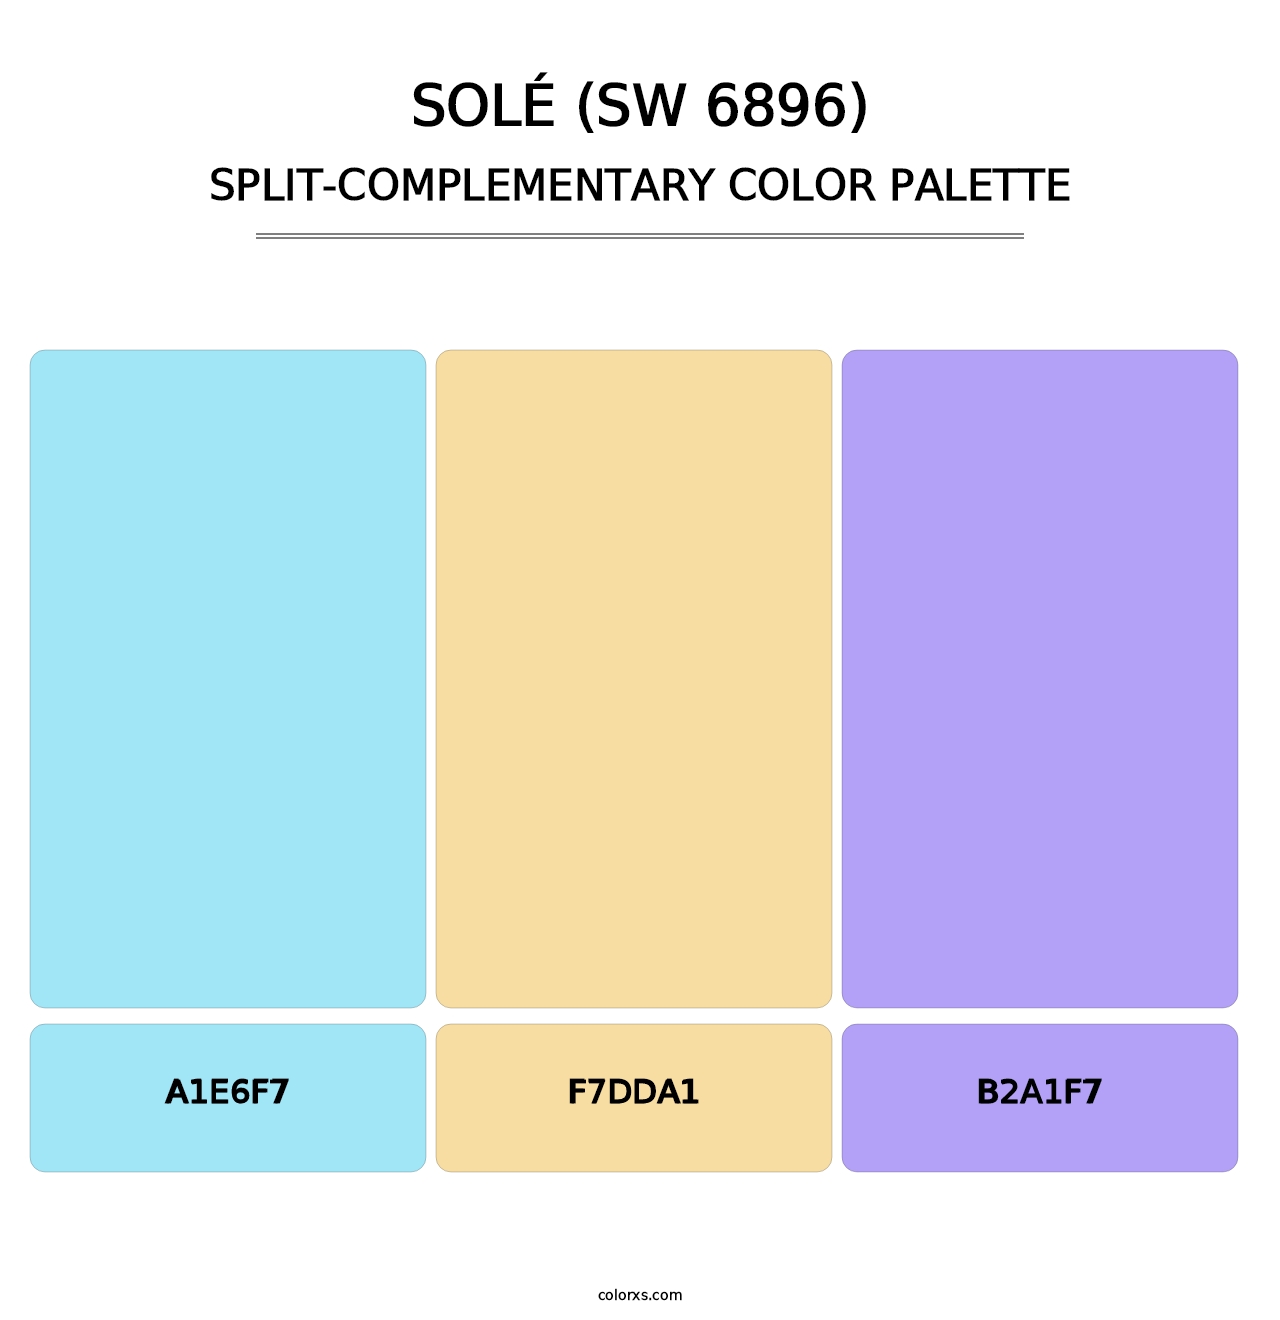 Solé (SW 6896) - Split-Complementary Color Palette